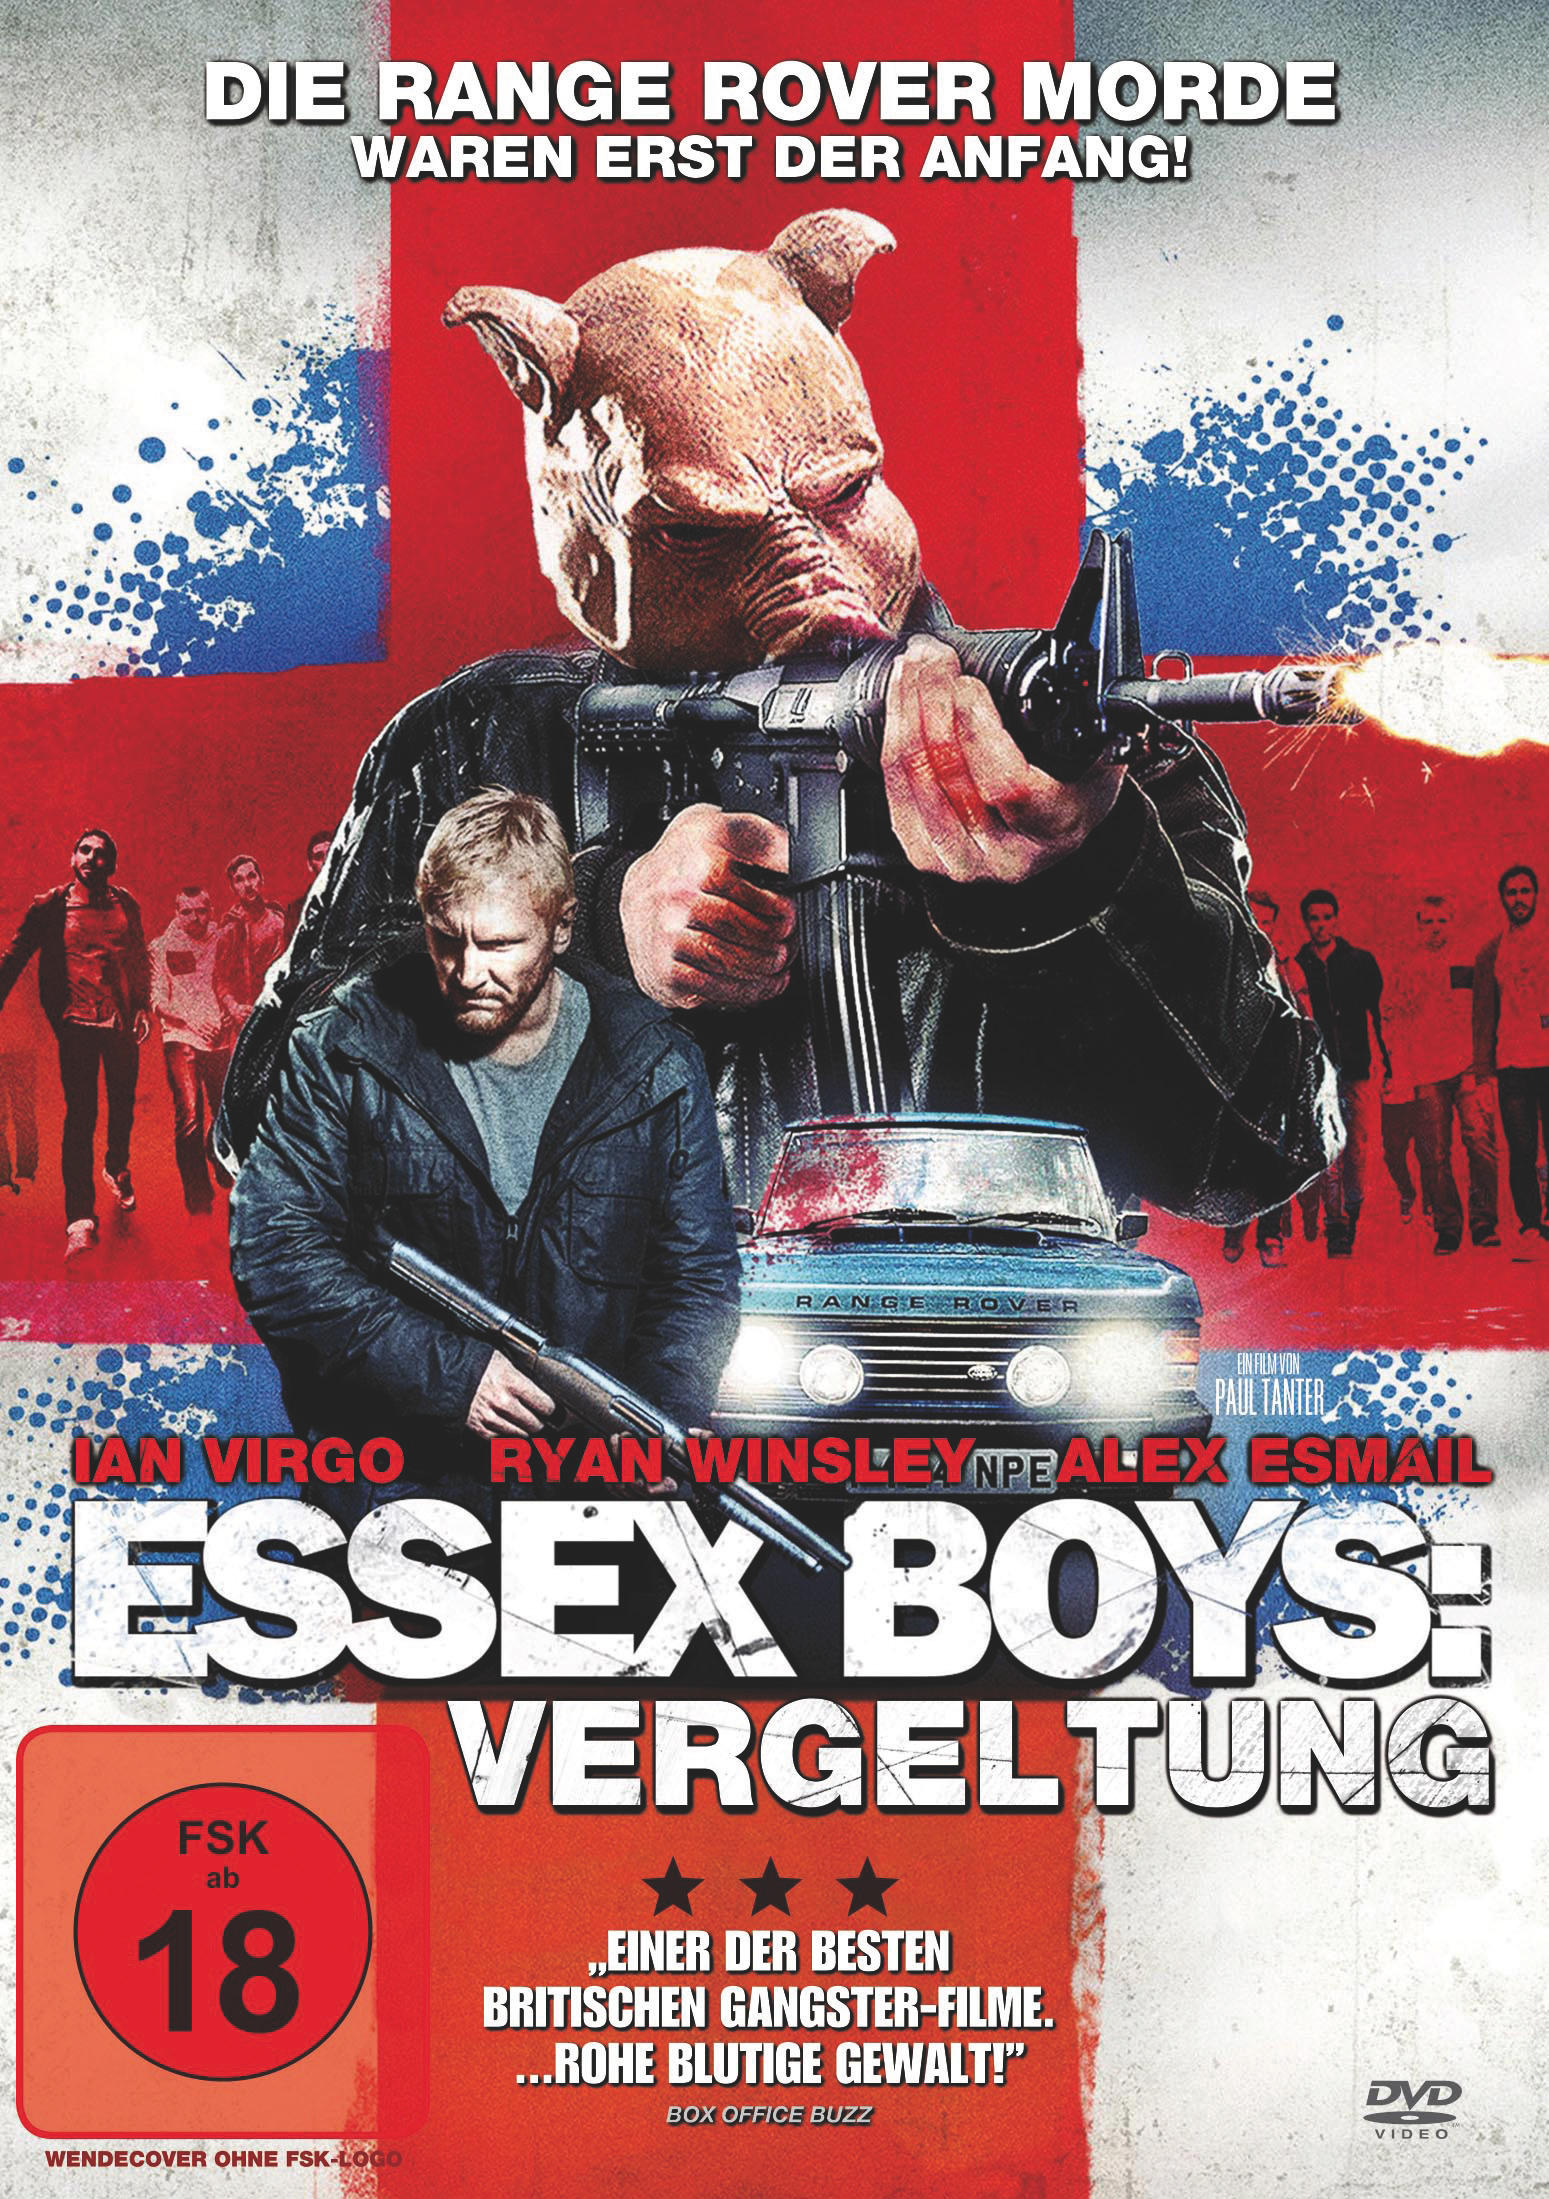 Essex Vergeltung Boys: DVD